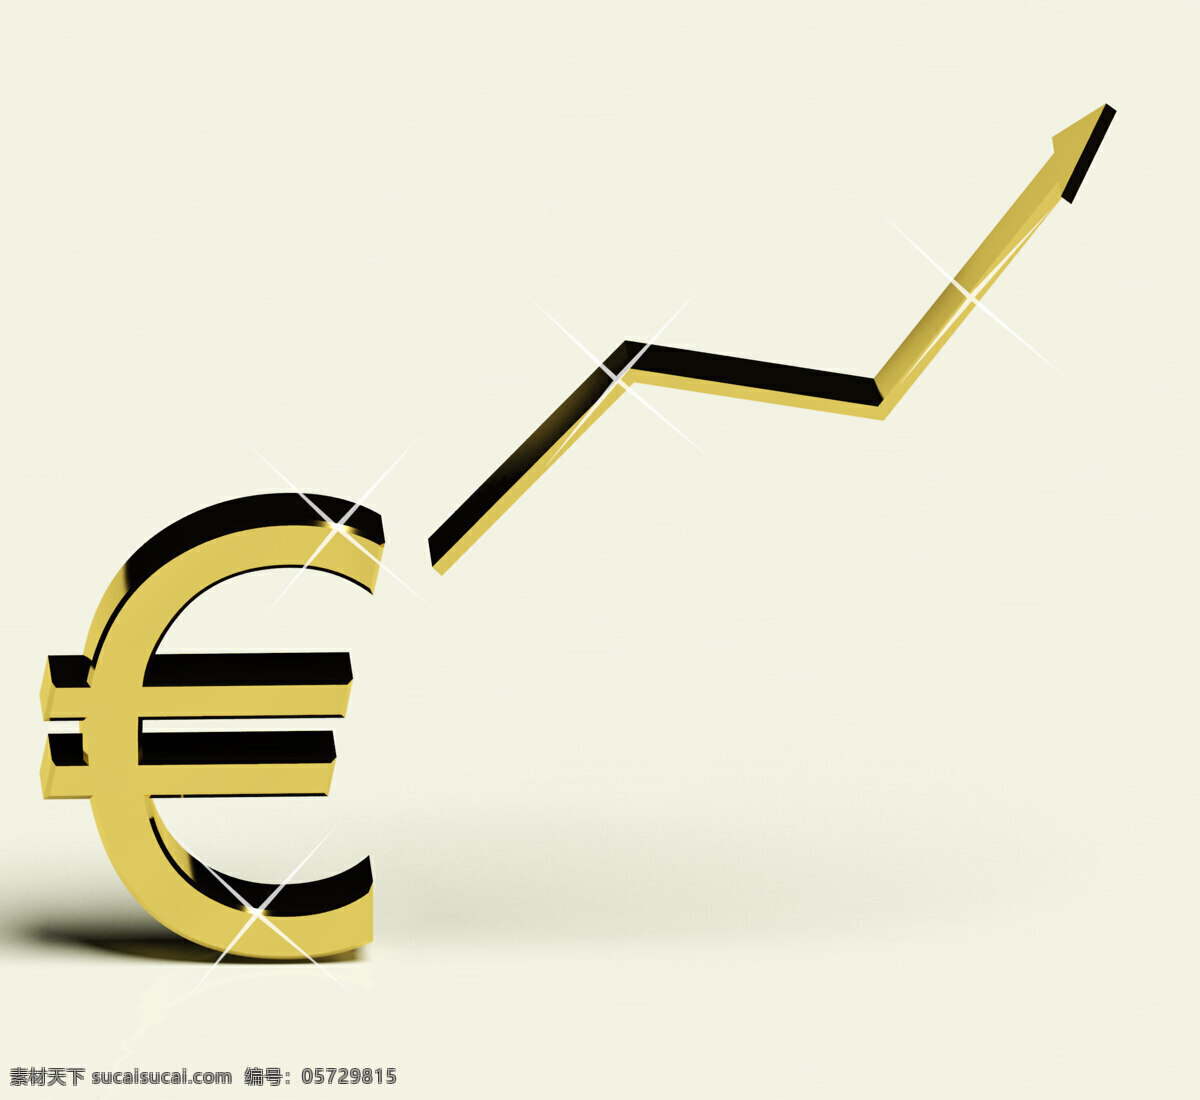 欧元 符号 箭头 作为 收入 利润 象征 商务金融